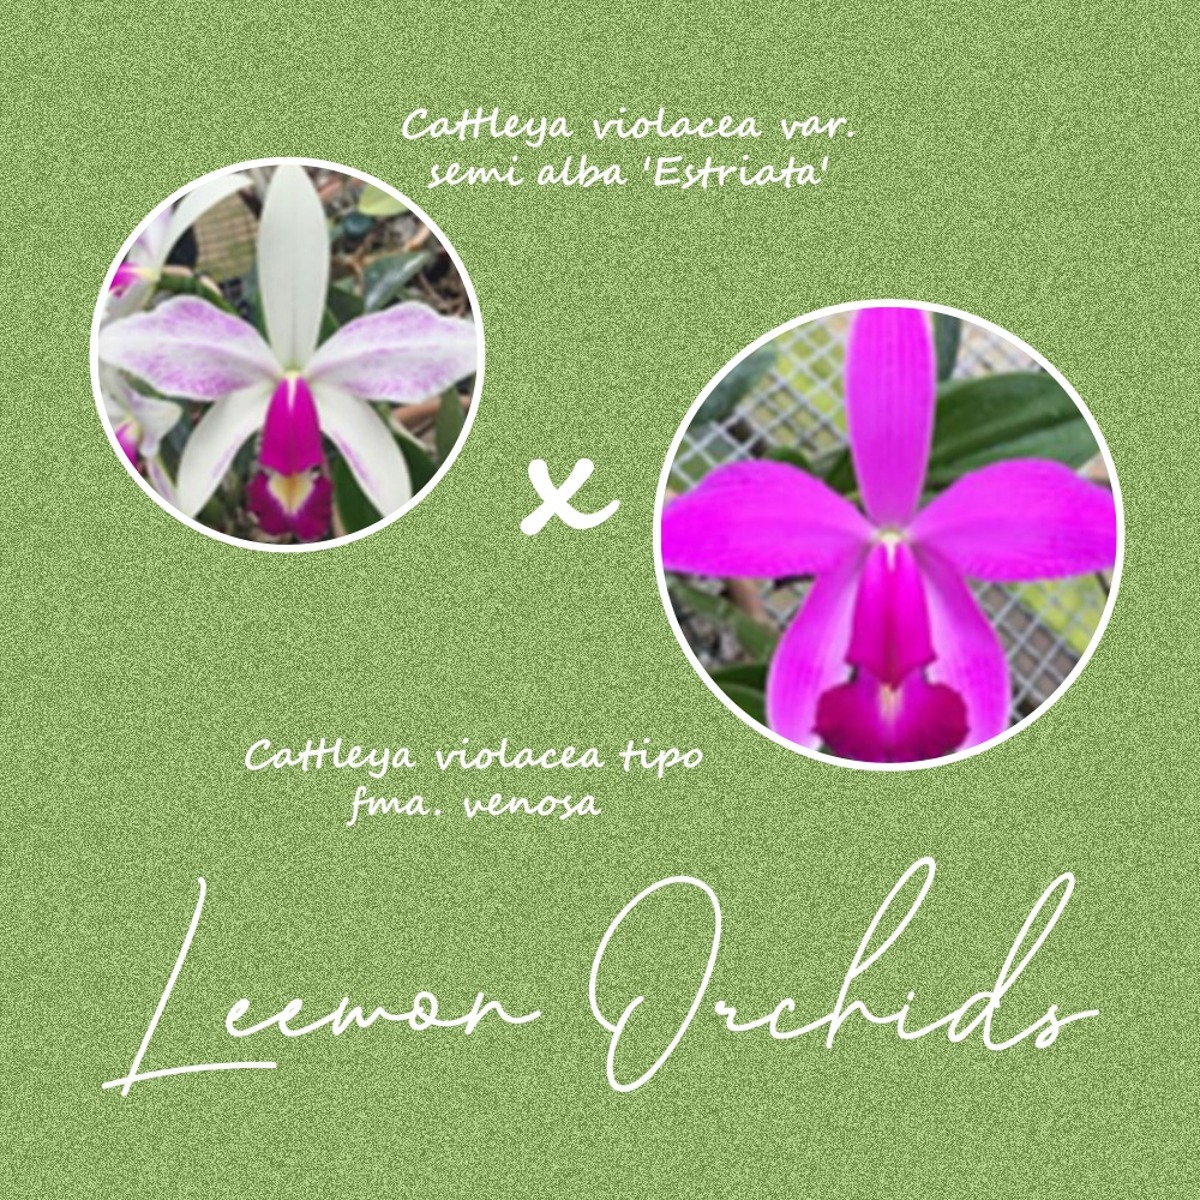 [브라질 DNO124] Cattleya violacea var. semi alba &#039;Estriata&#039; x tipo fma. venosa (온라인 한정재고: 1)